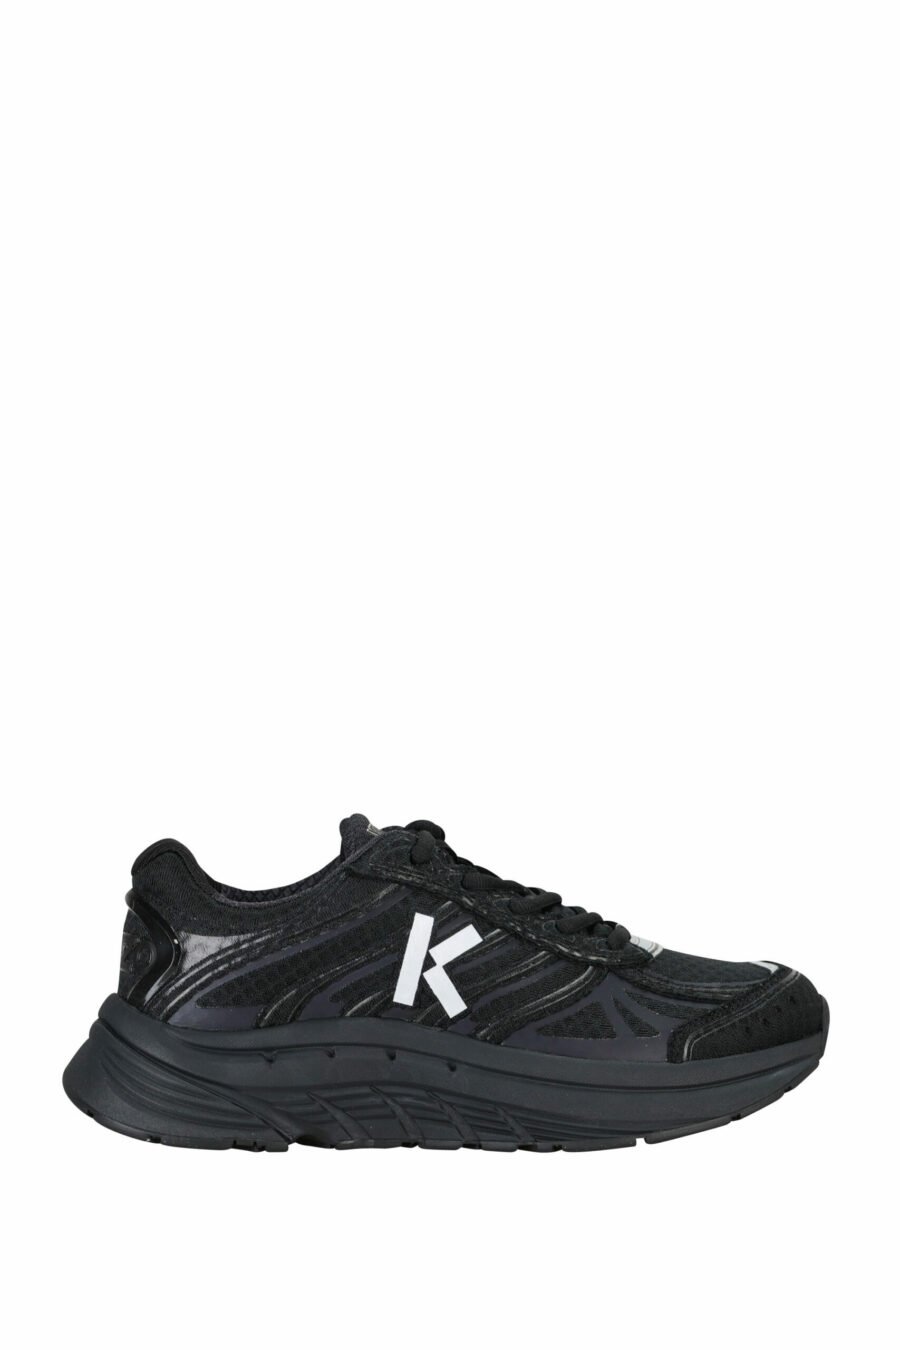 Zapatillas negras "kenzo tech runner" con minilogo blanco - 3612230549722 scaled